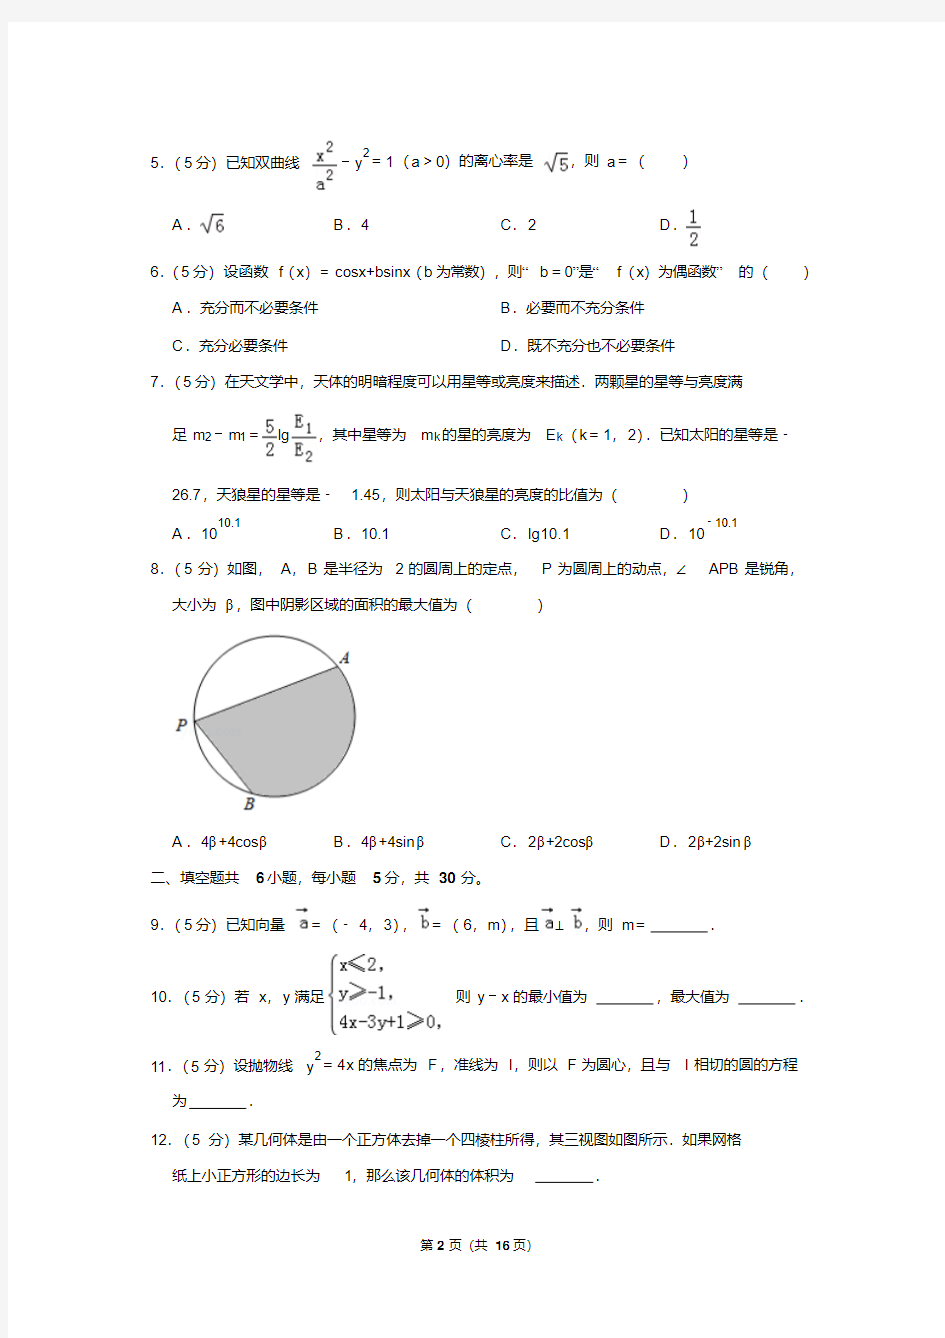 2019年北京市高考数学试卷(文科)以及答案解析